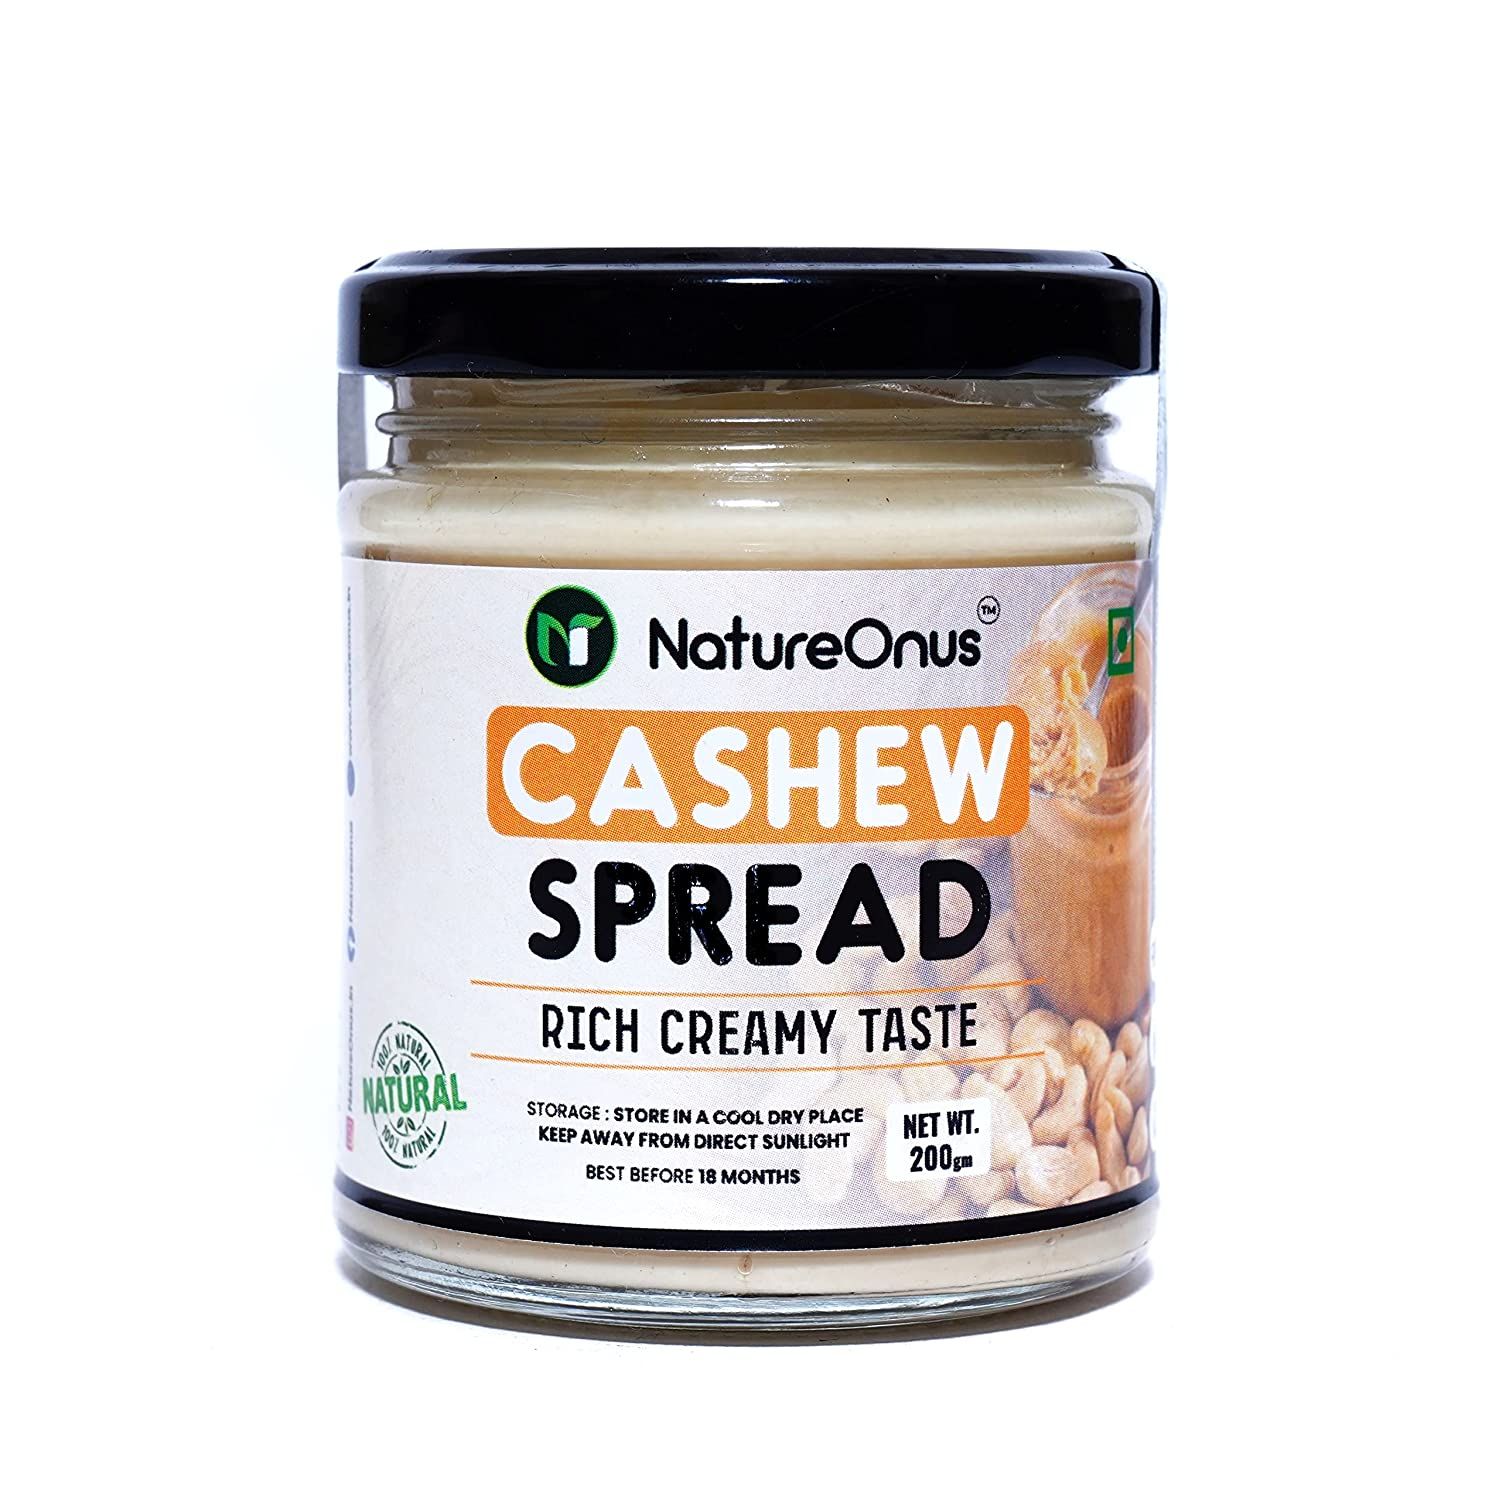 NatureOnus Cashew Nut Spread Image